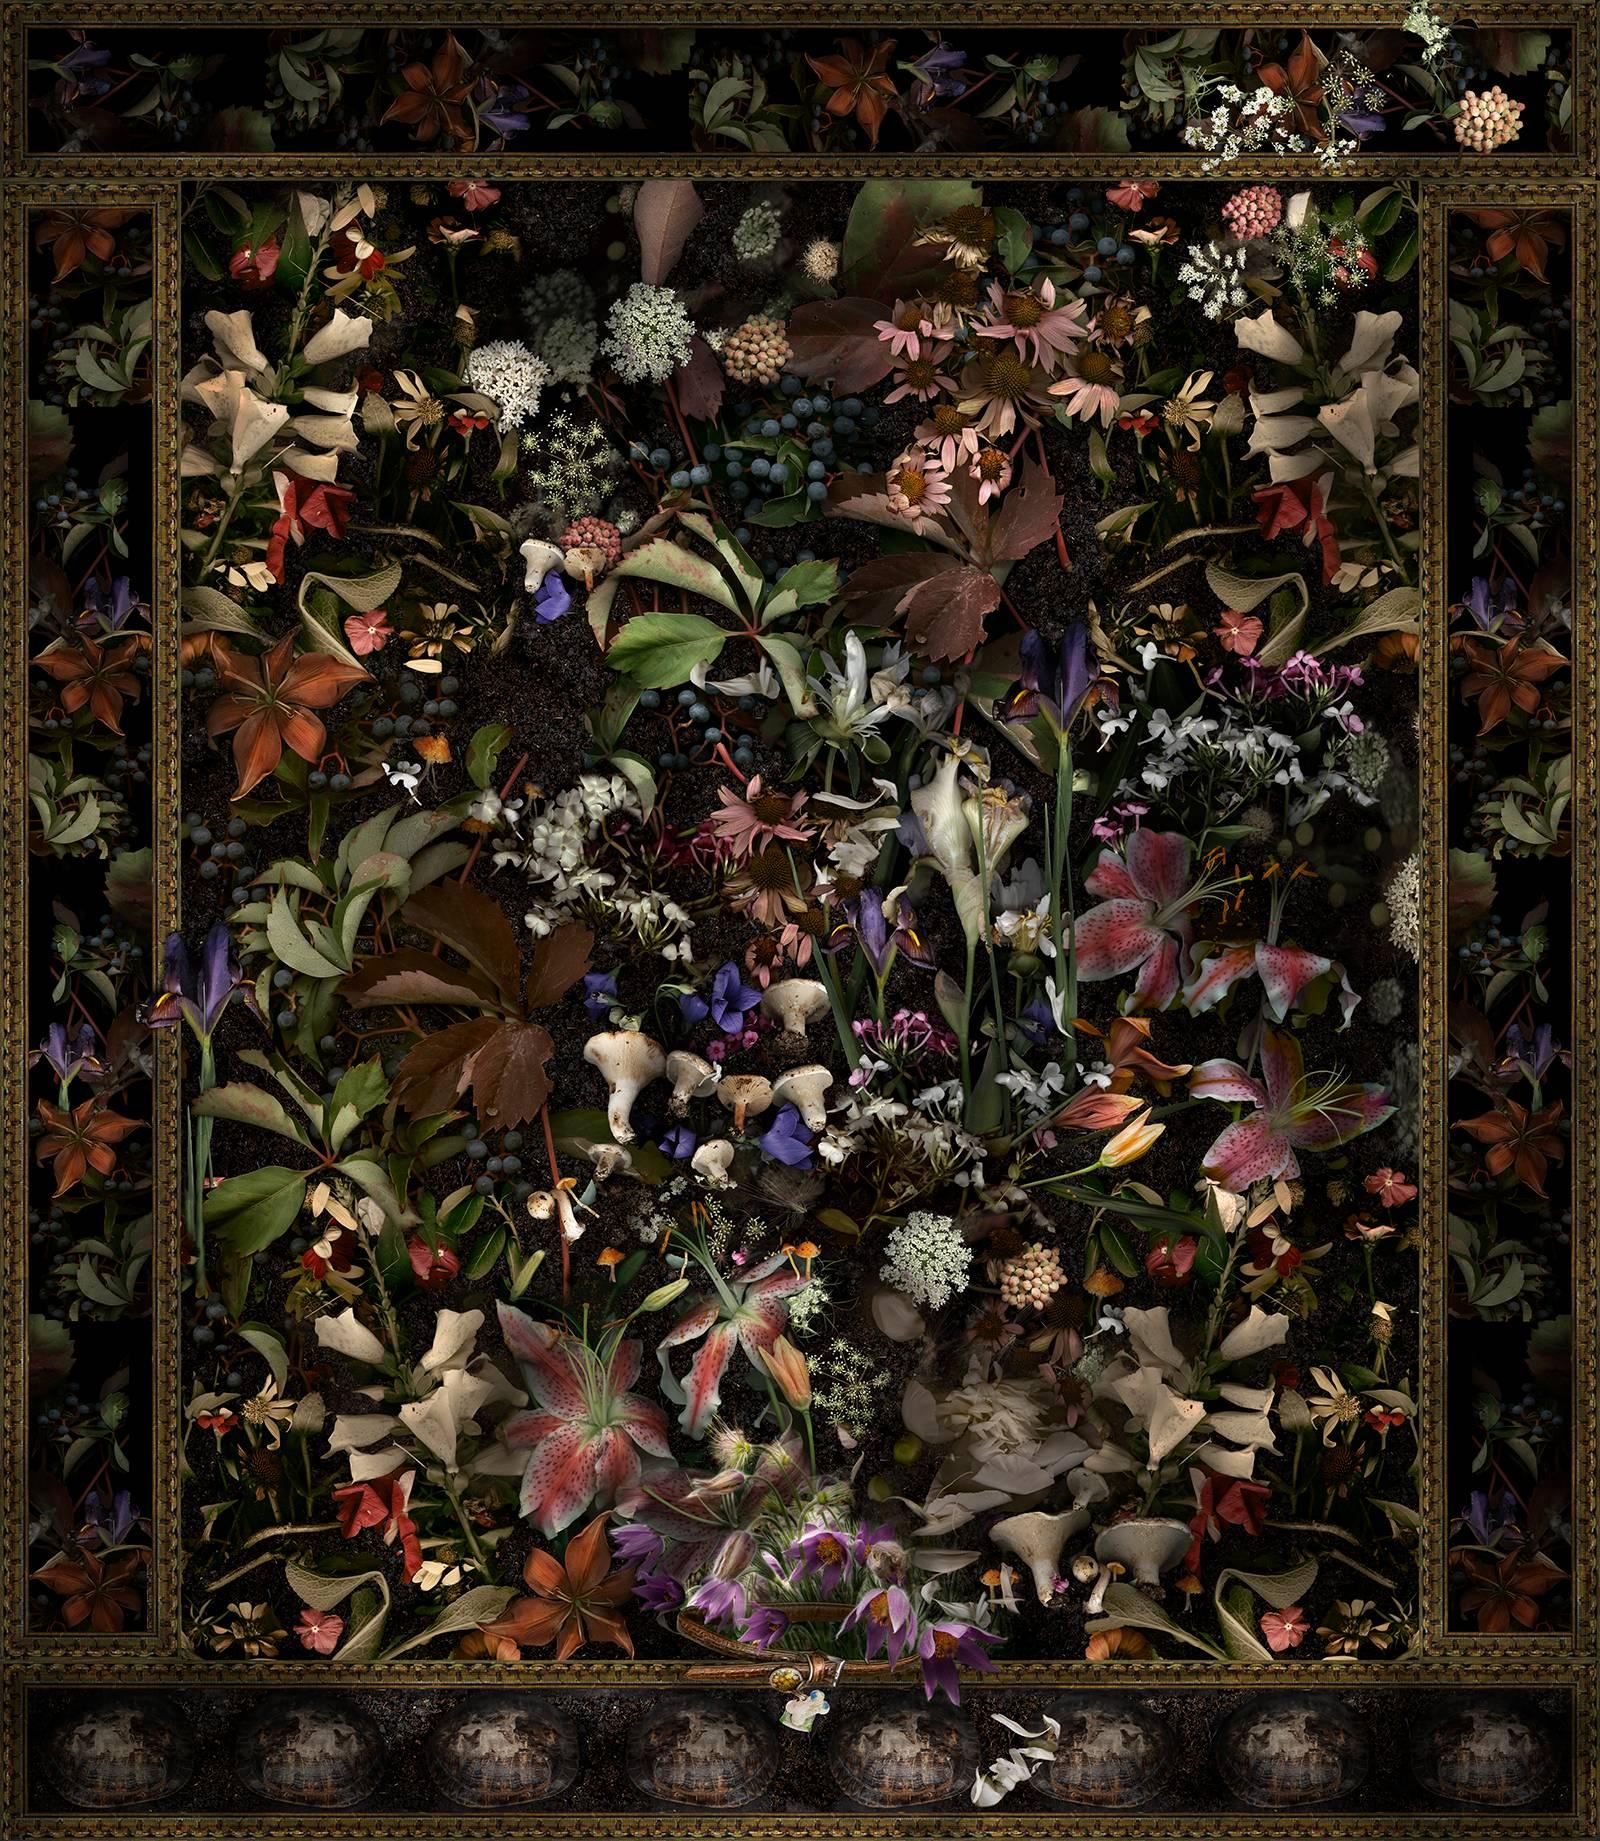 Color Photograph Lisa A. Frank - Scout A, très bon chien : Impression numérique de natures mortes florales de style baroque moderne